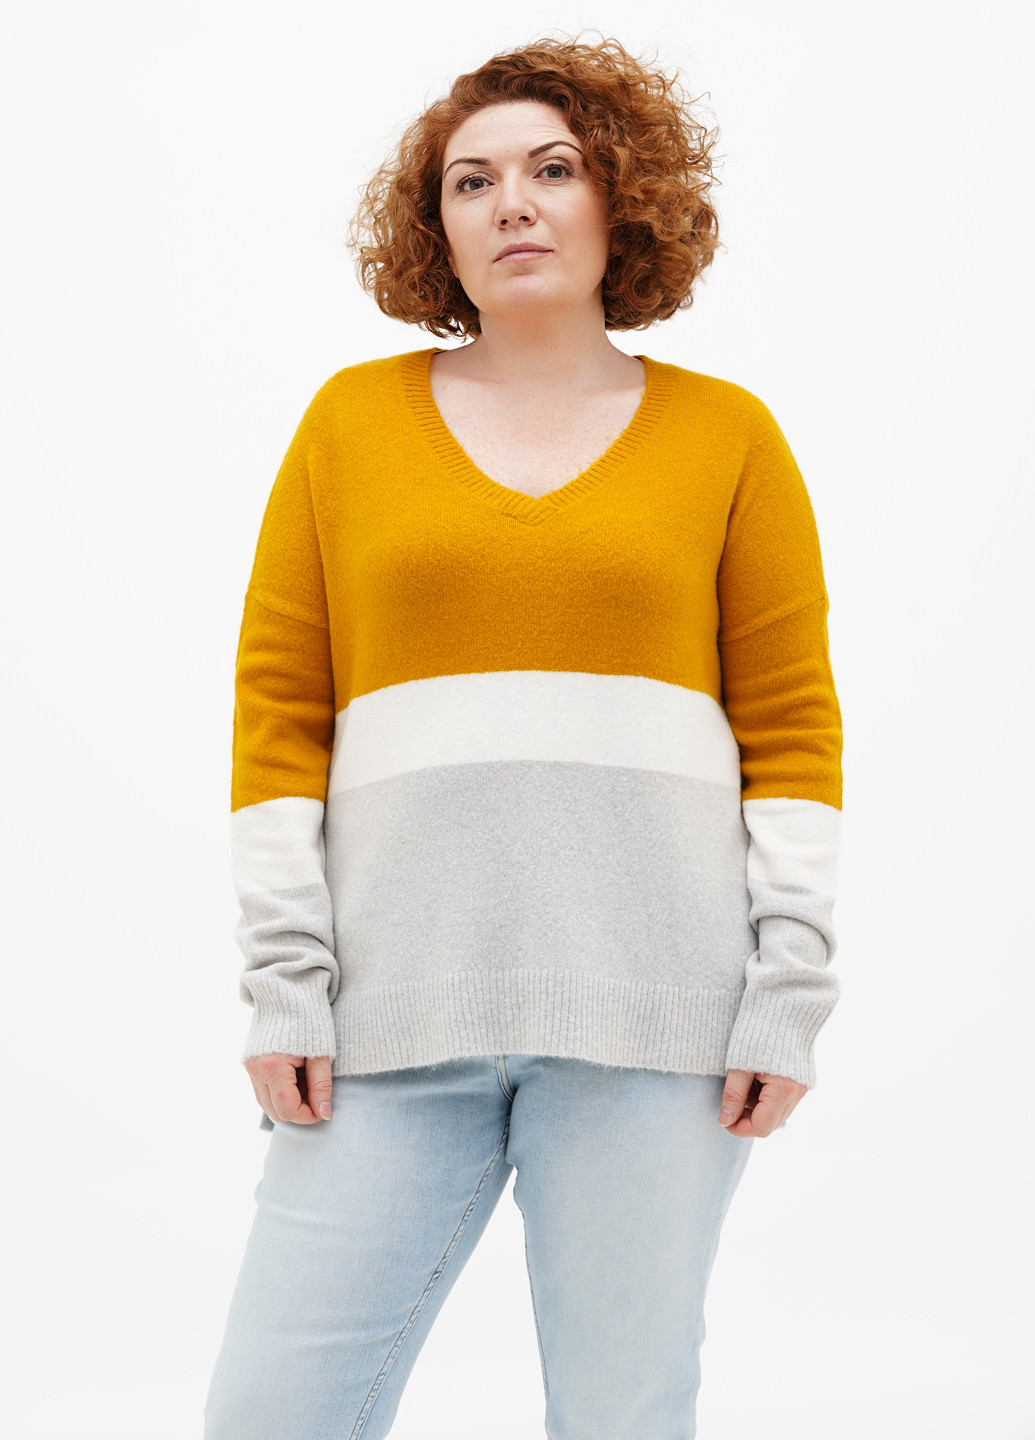 Комбинированный демисезонный пуловер пуловер S.Oliver